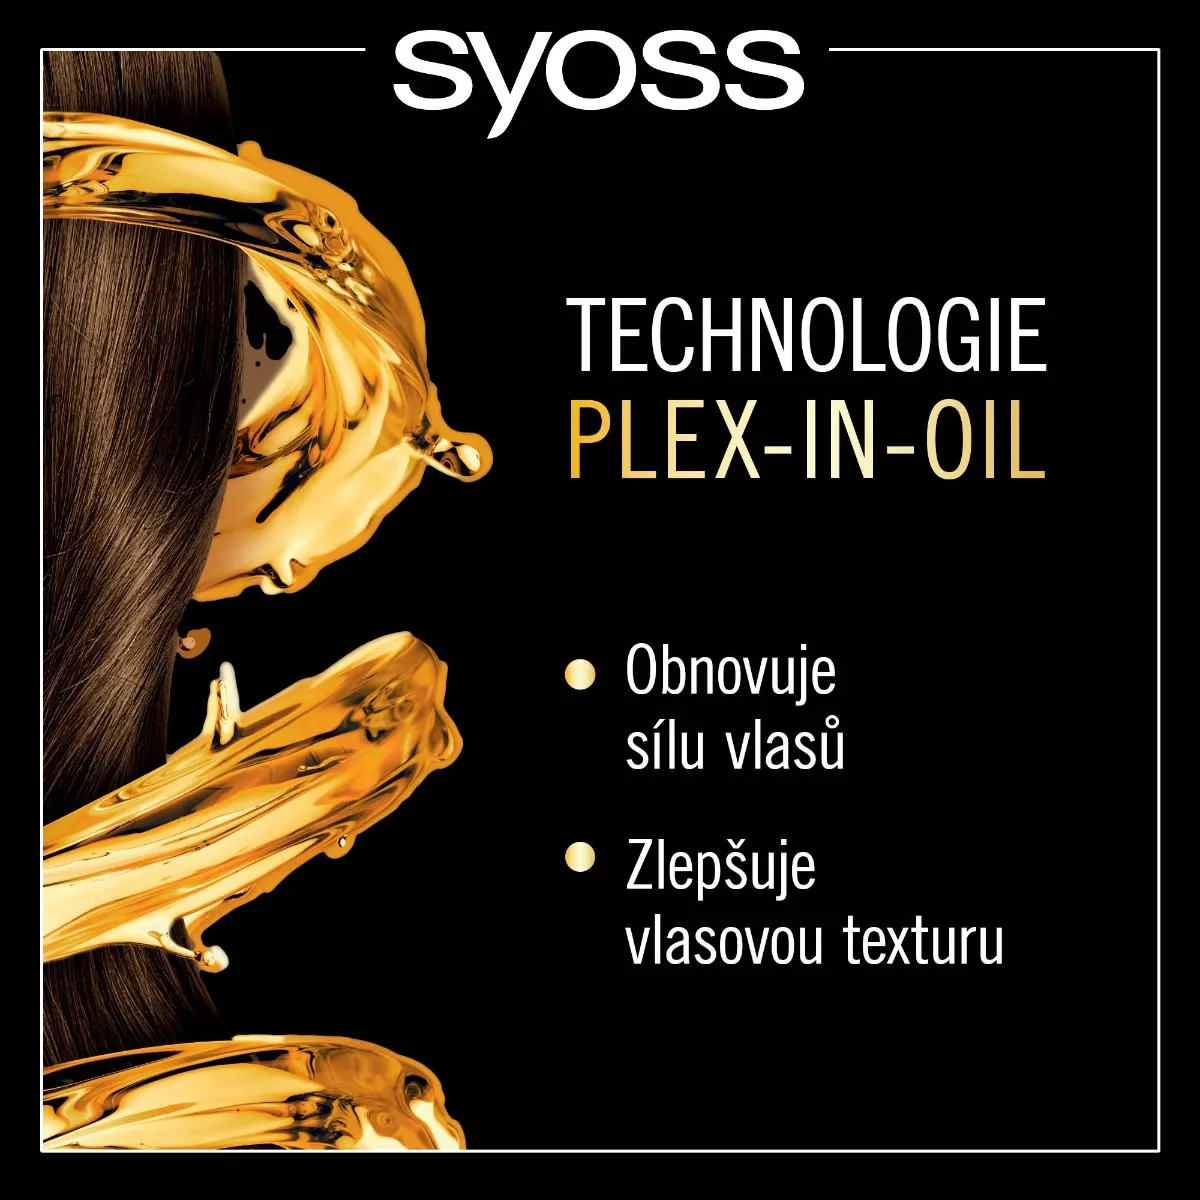 Syoss Oleo Intense Barva na vlasy 6-80 oříškově plavá 50 ml